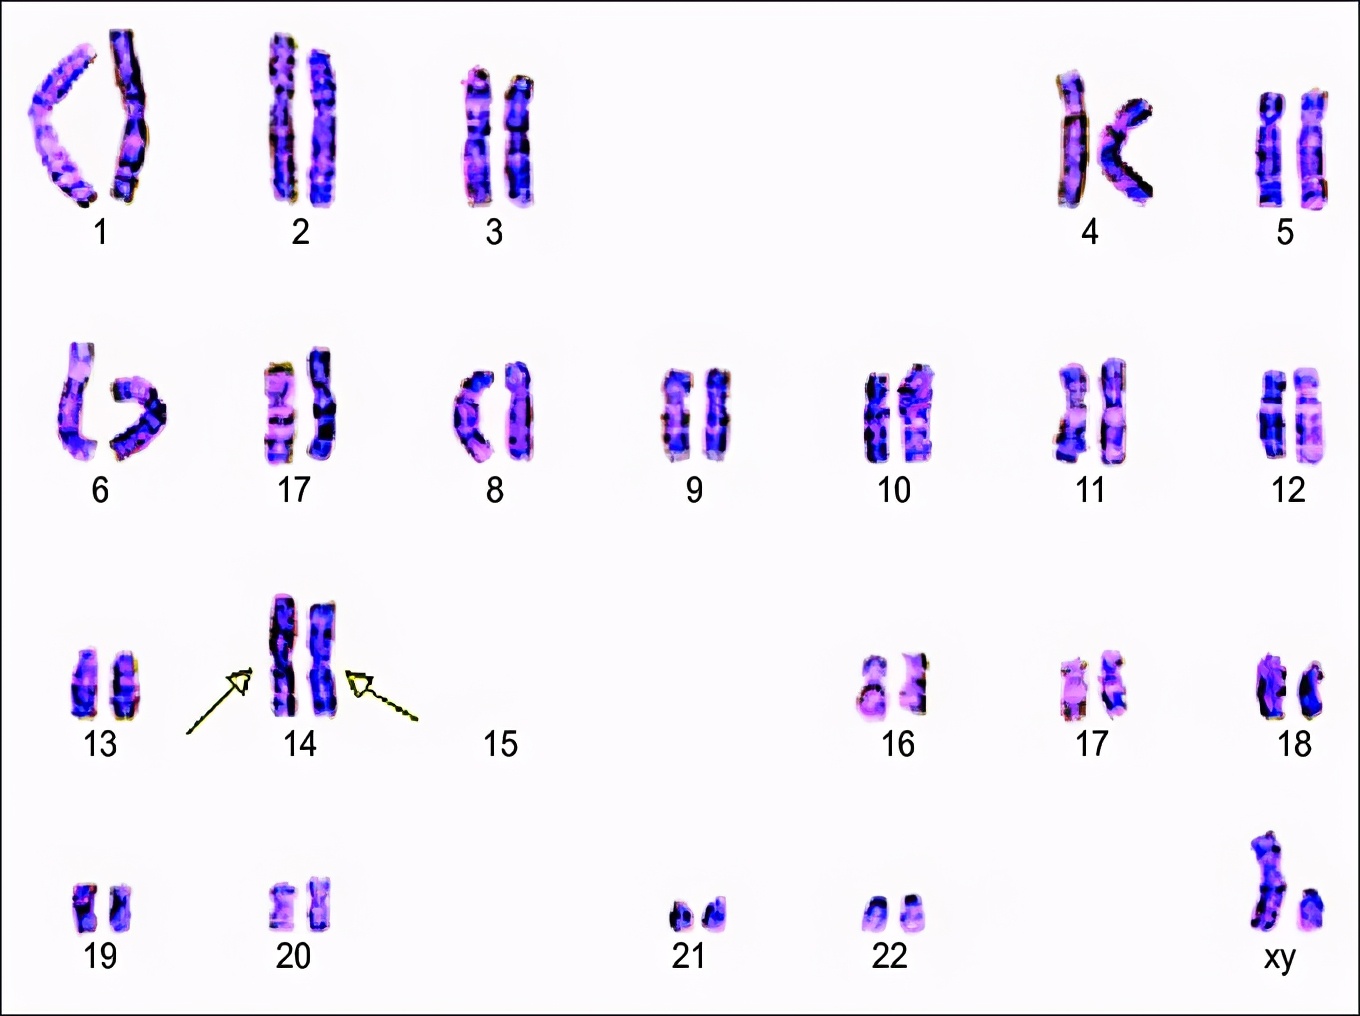 只有22对染色体不过也有极少数特殊的人类,由于十分偶然的染色体变异